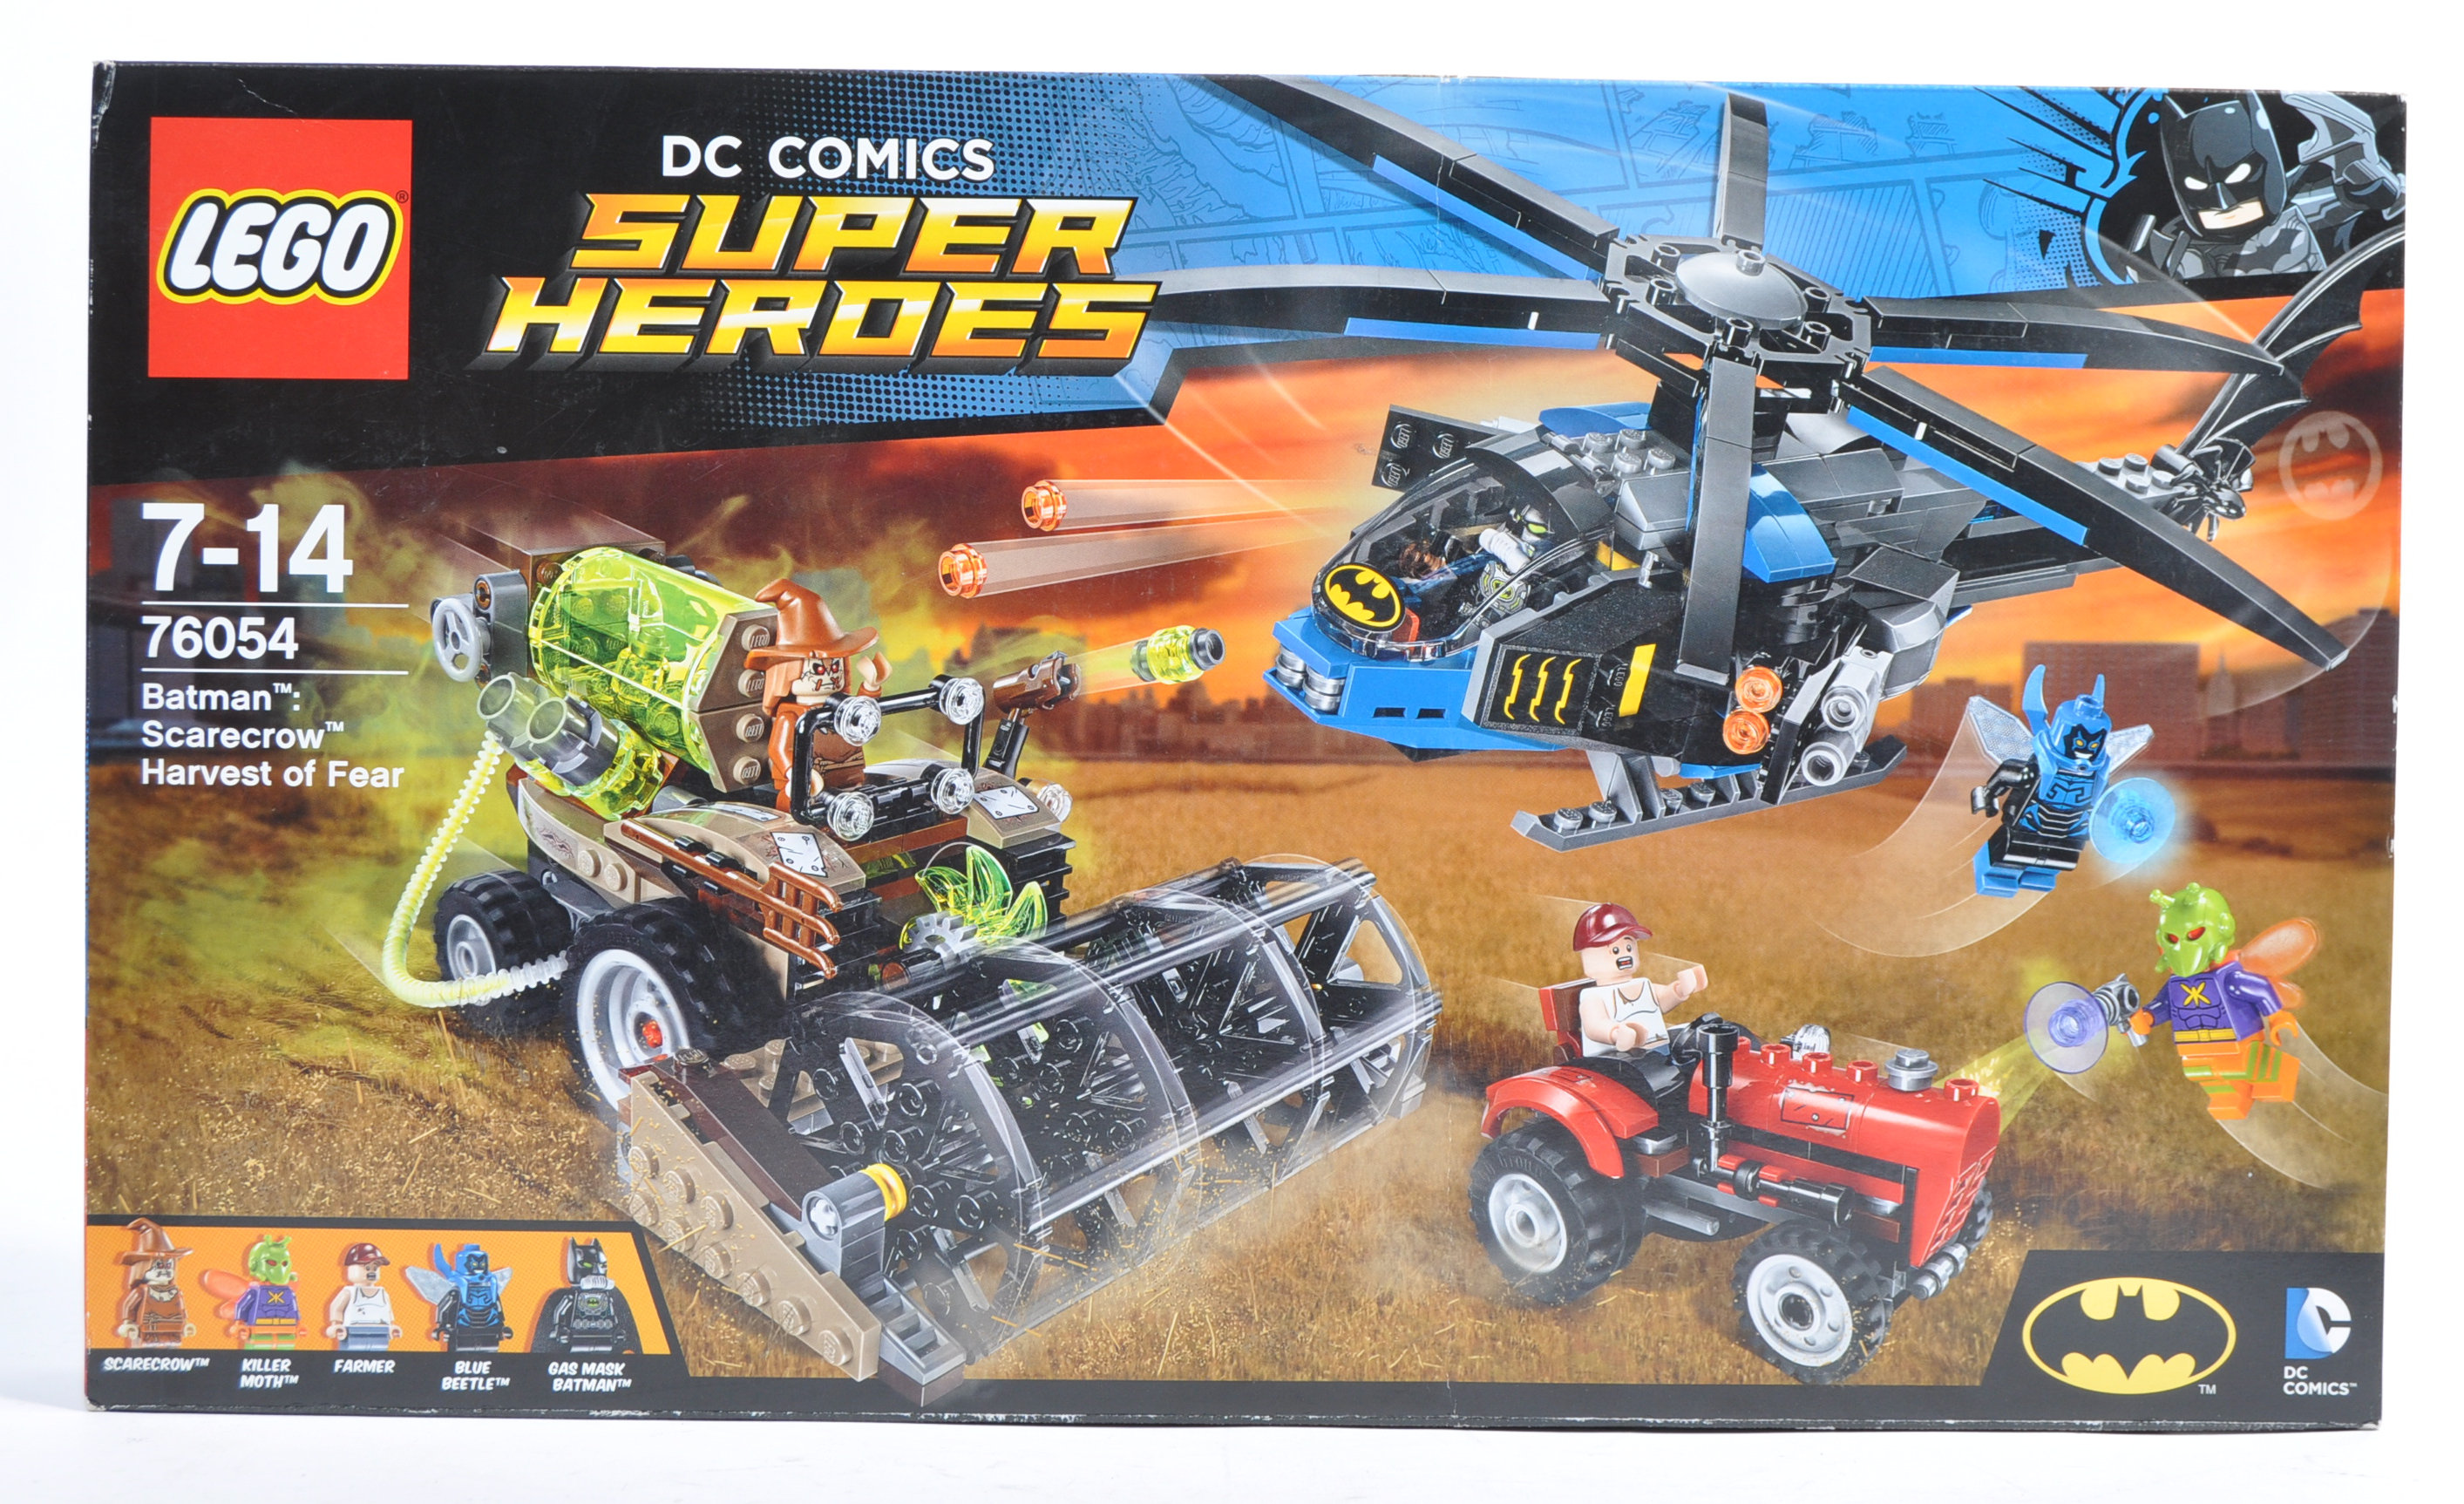 LEGO SET - DC COMICS SUPER HEROES - 76054 - BATMAN - SCARECROW - HARVEST OF FEAR